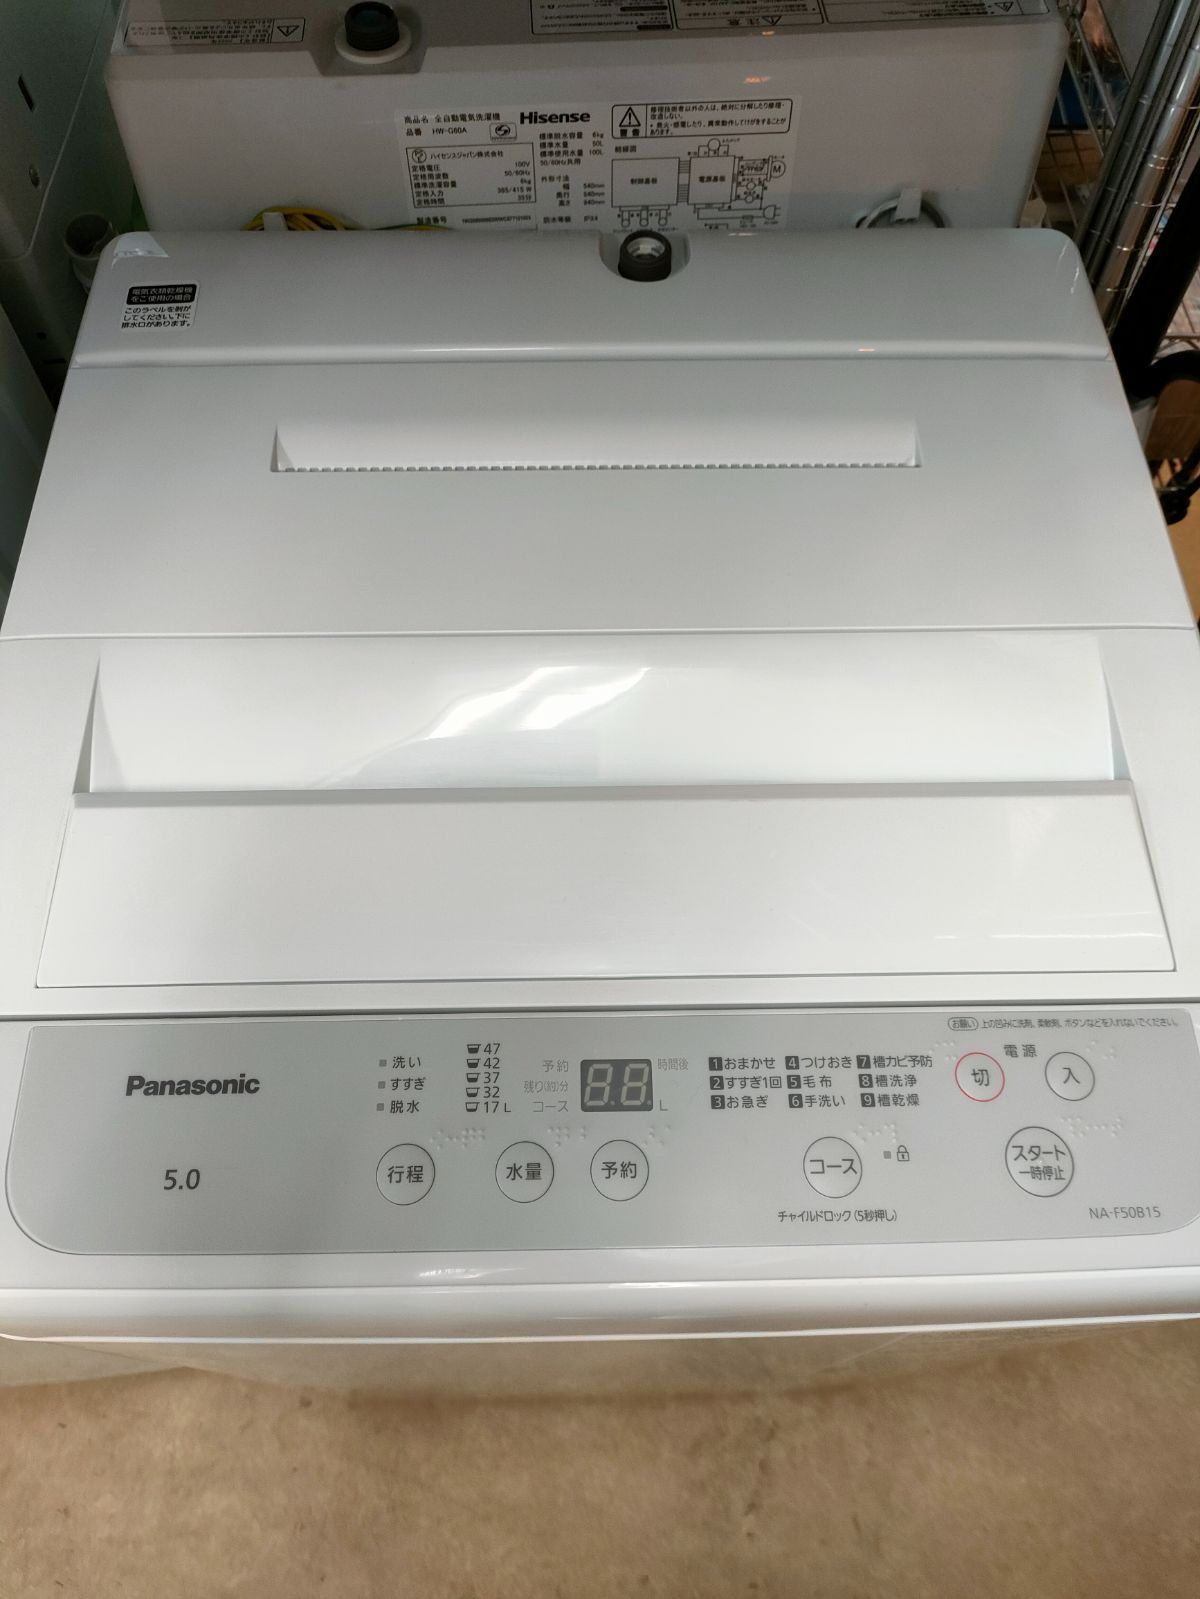 ◇Panasonic 洗濯機 5kg 2021年製 NA-F50B15 - メルカリ